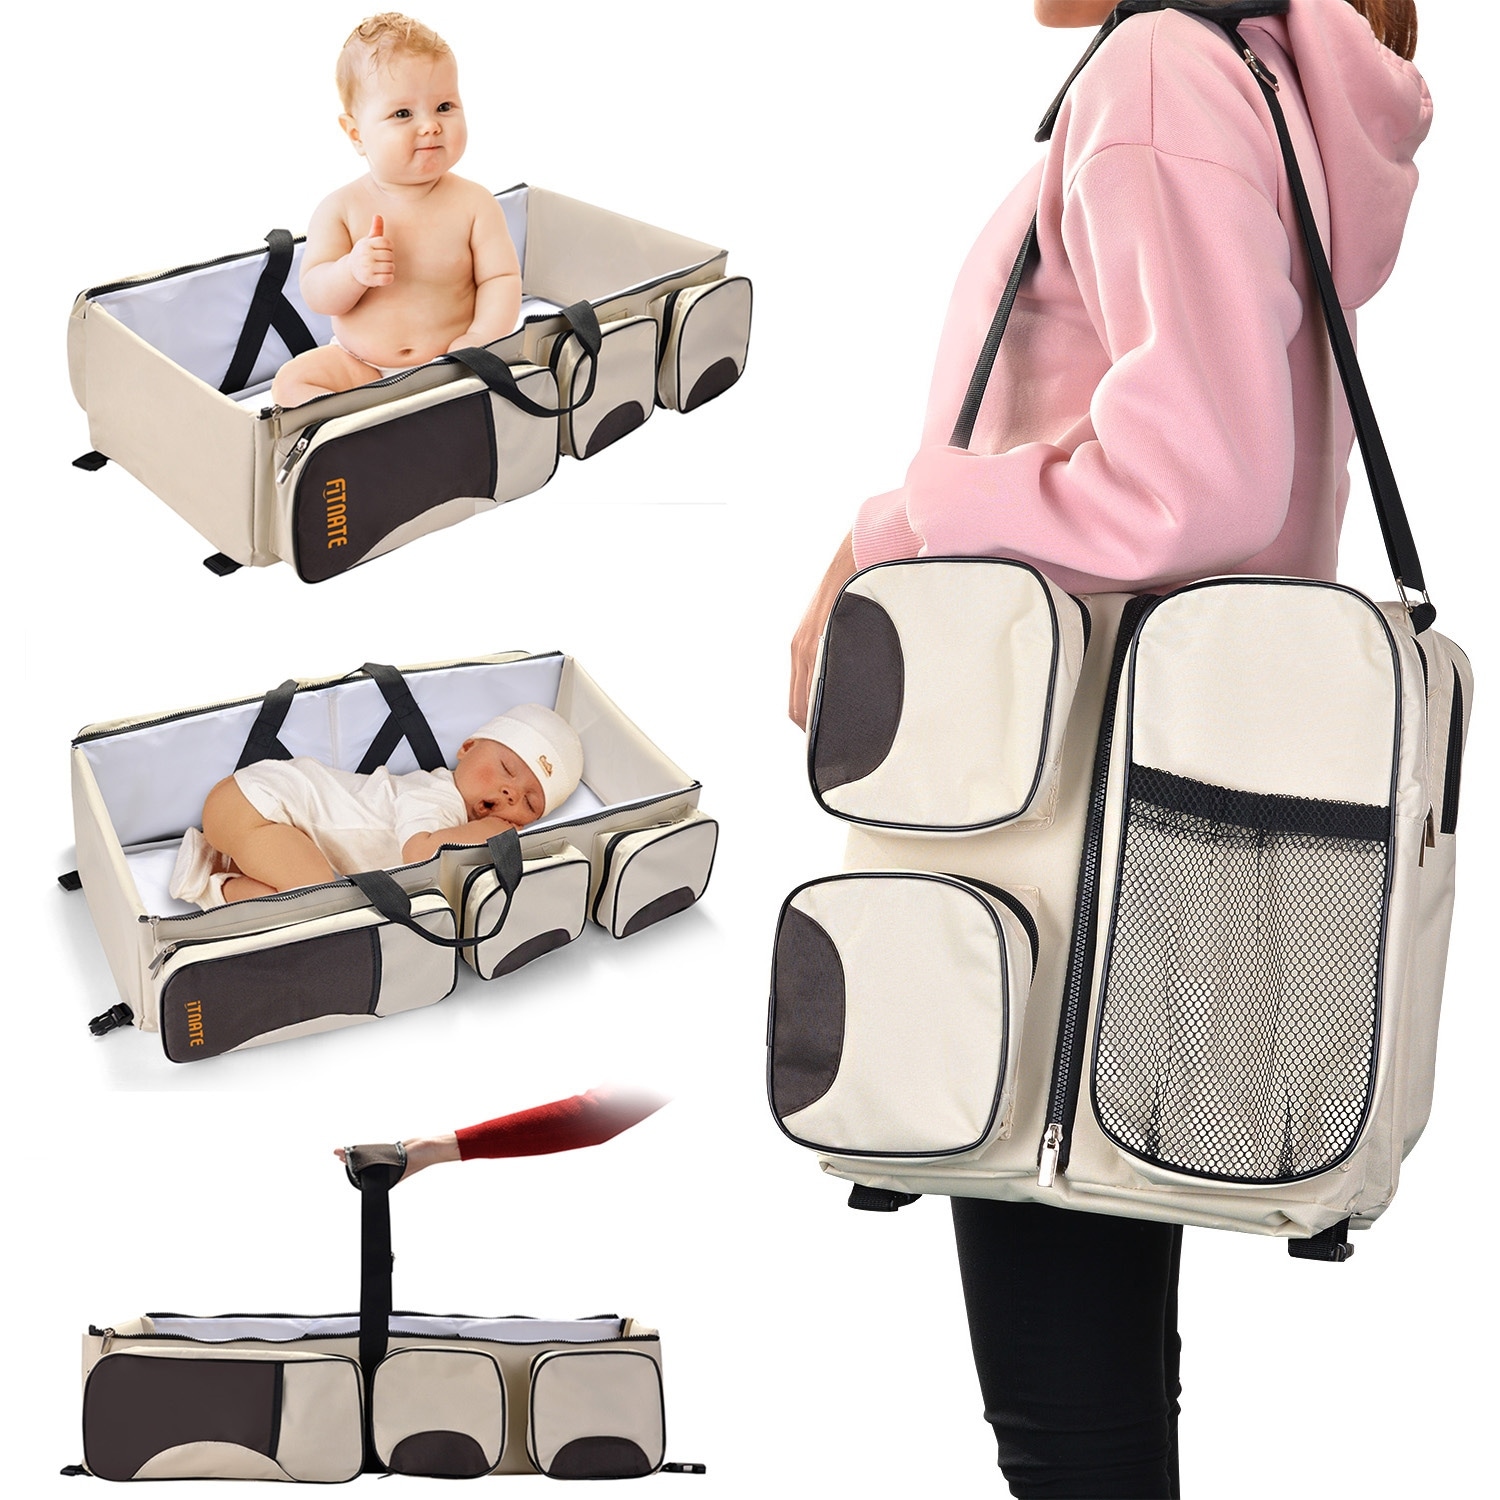 infant carry bag